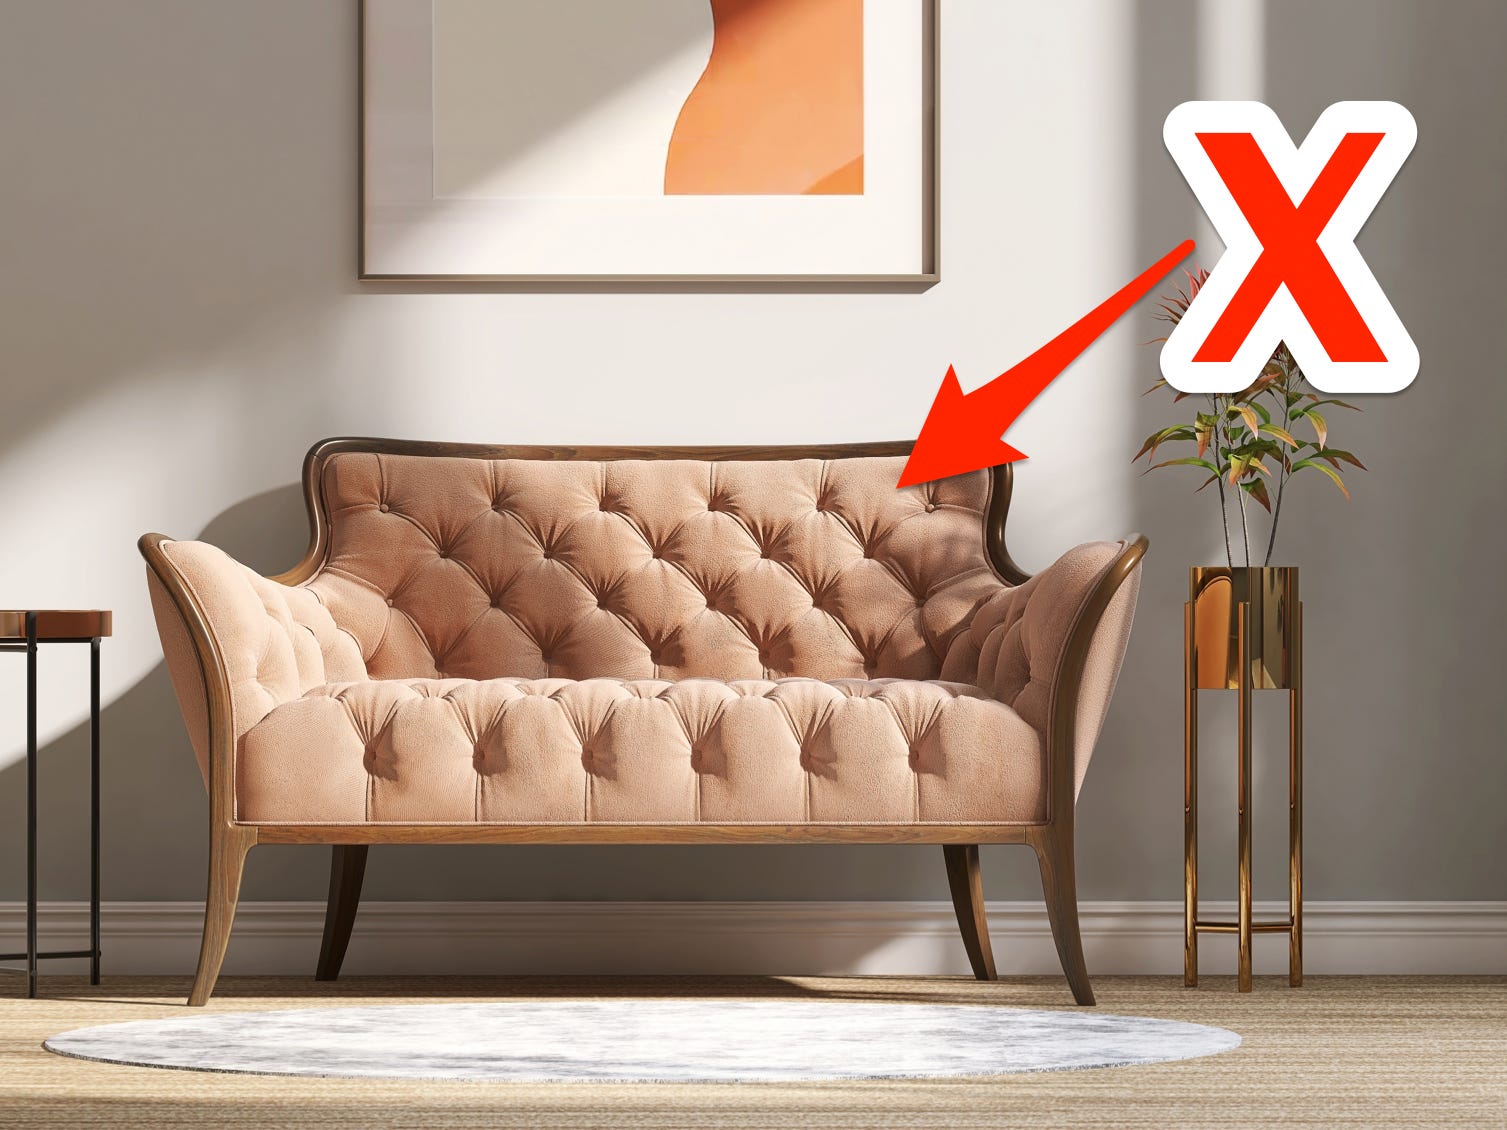 Rotes X und Pfeil zeigen auf ein pfirsichfarbenes, getuftetes Sofa in einem modernen Wohnzimmer